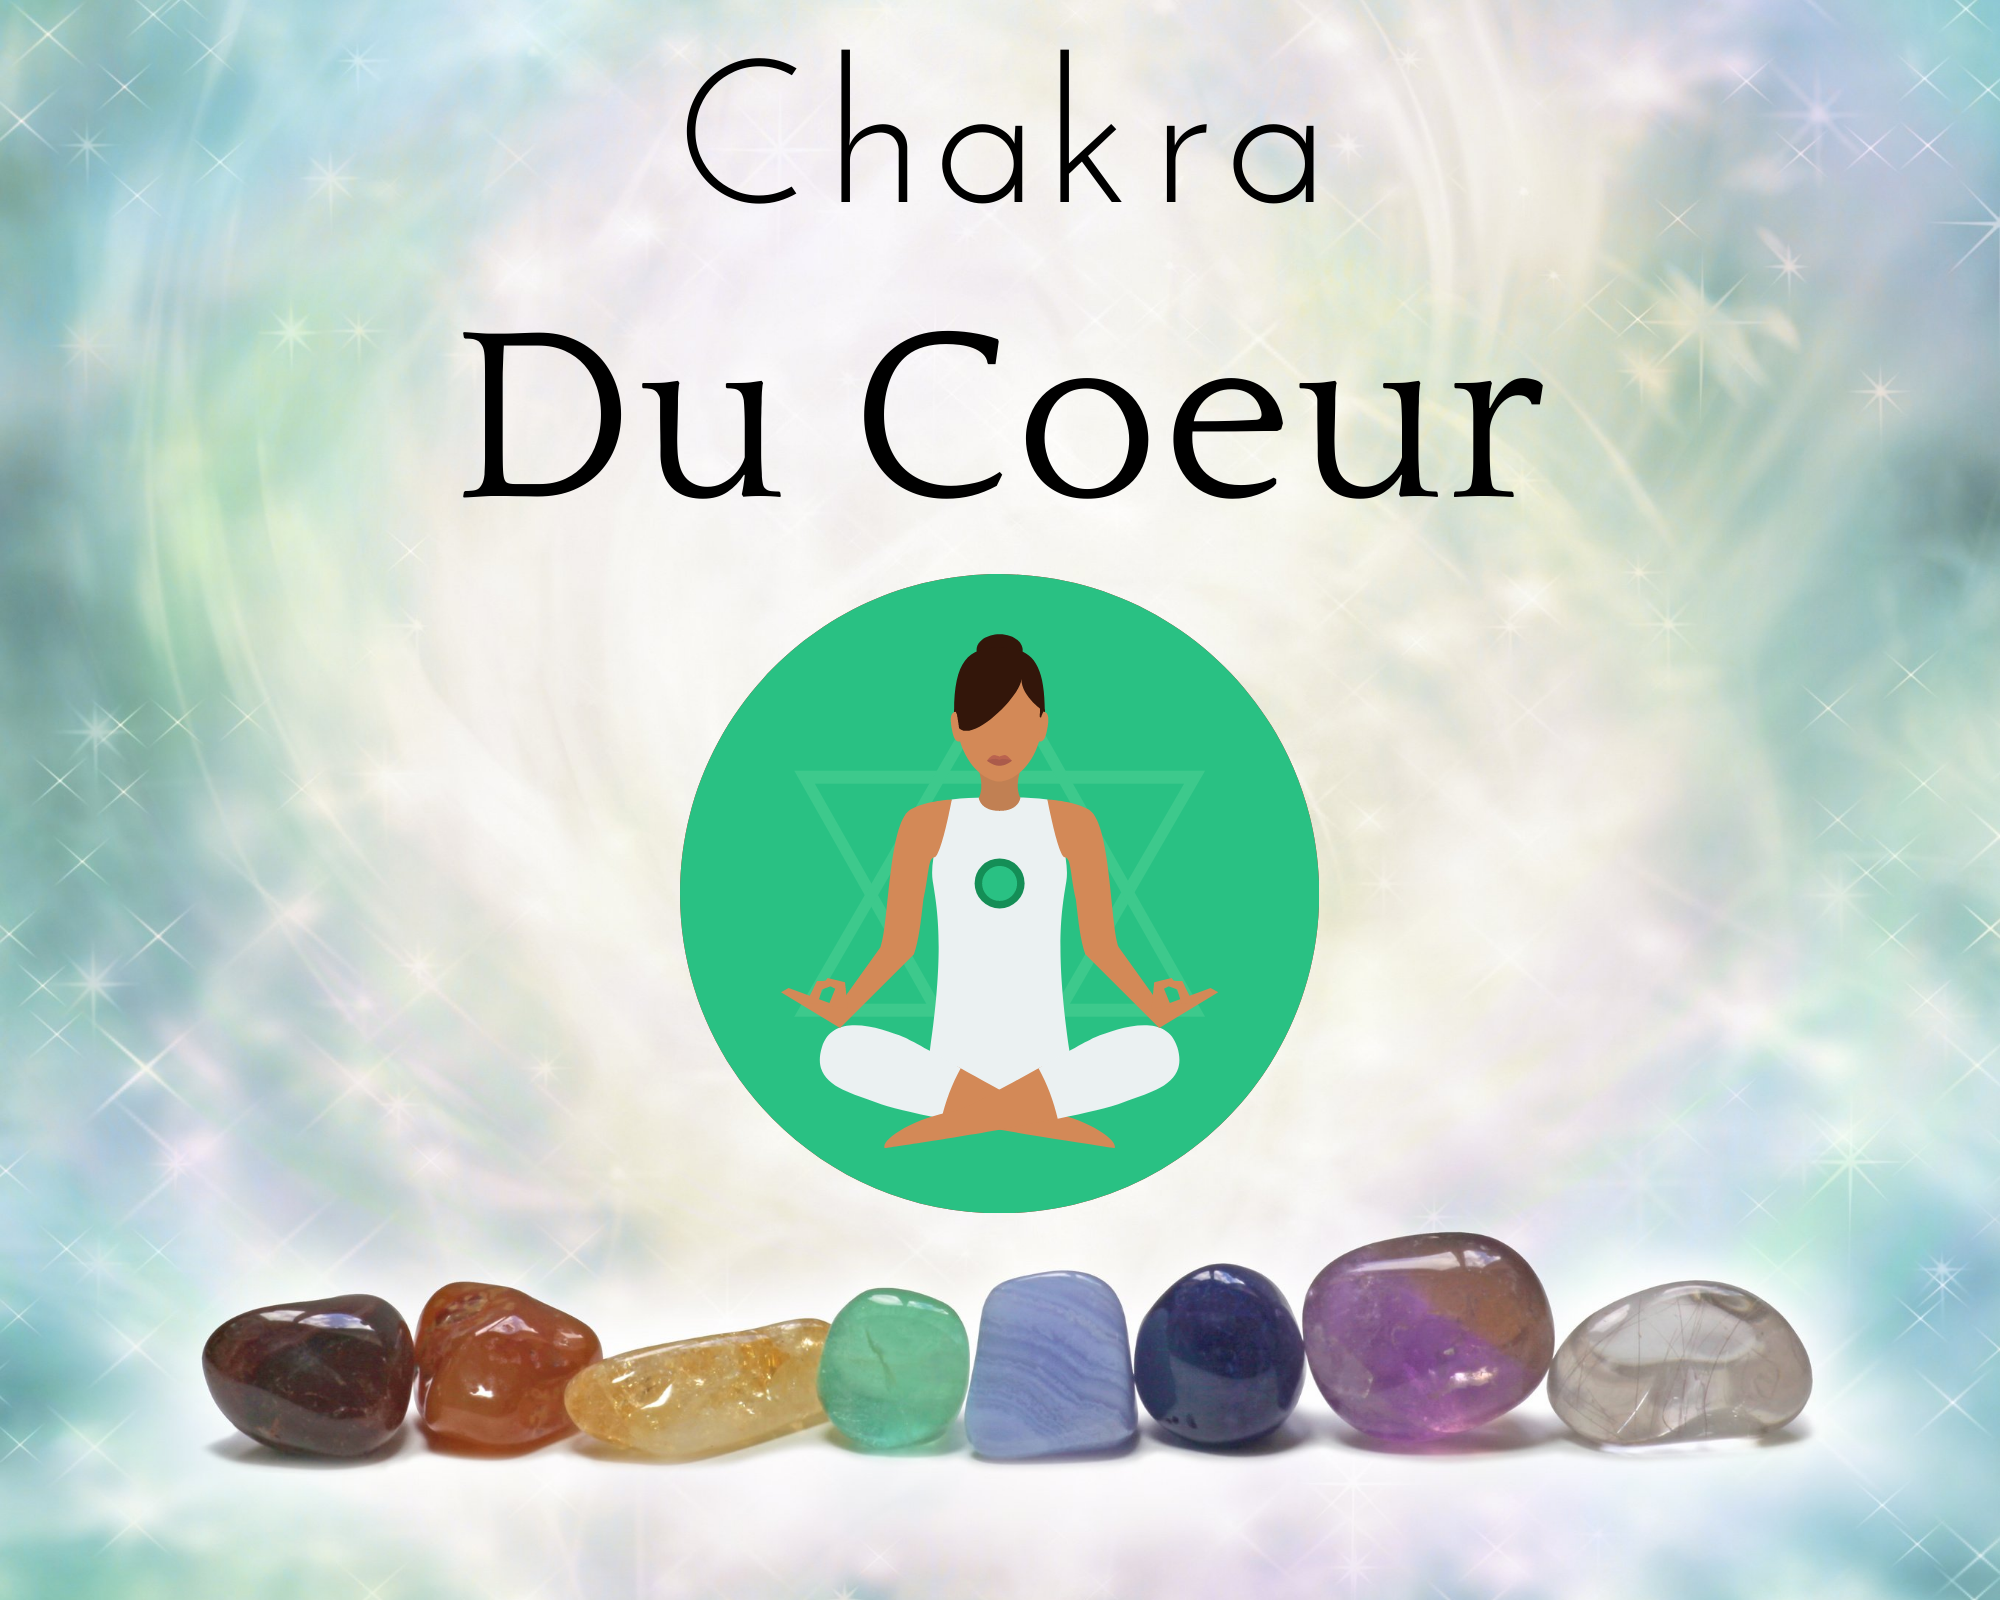 Le chakra du coeur ou Anahata : Quatrieme des sept chakras